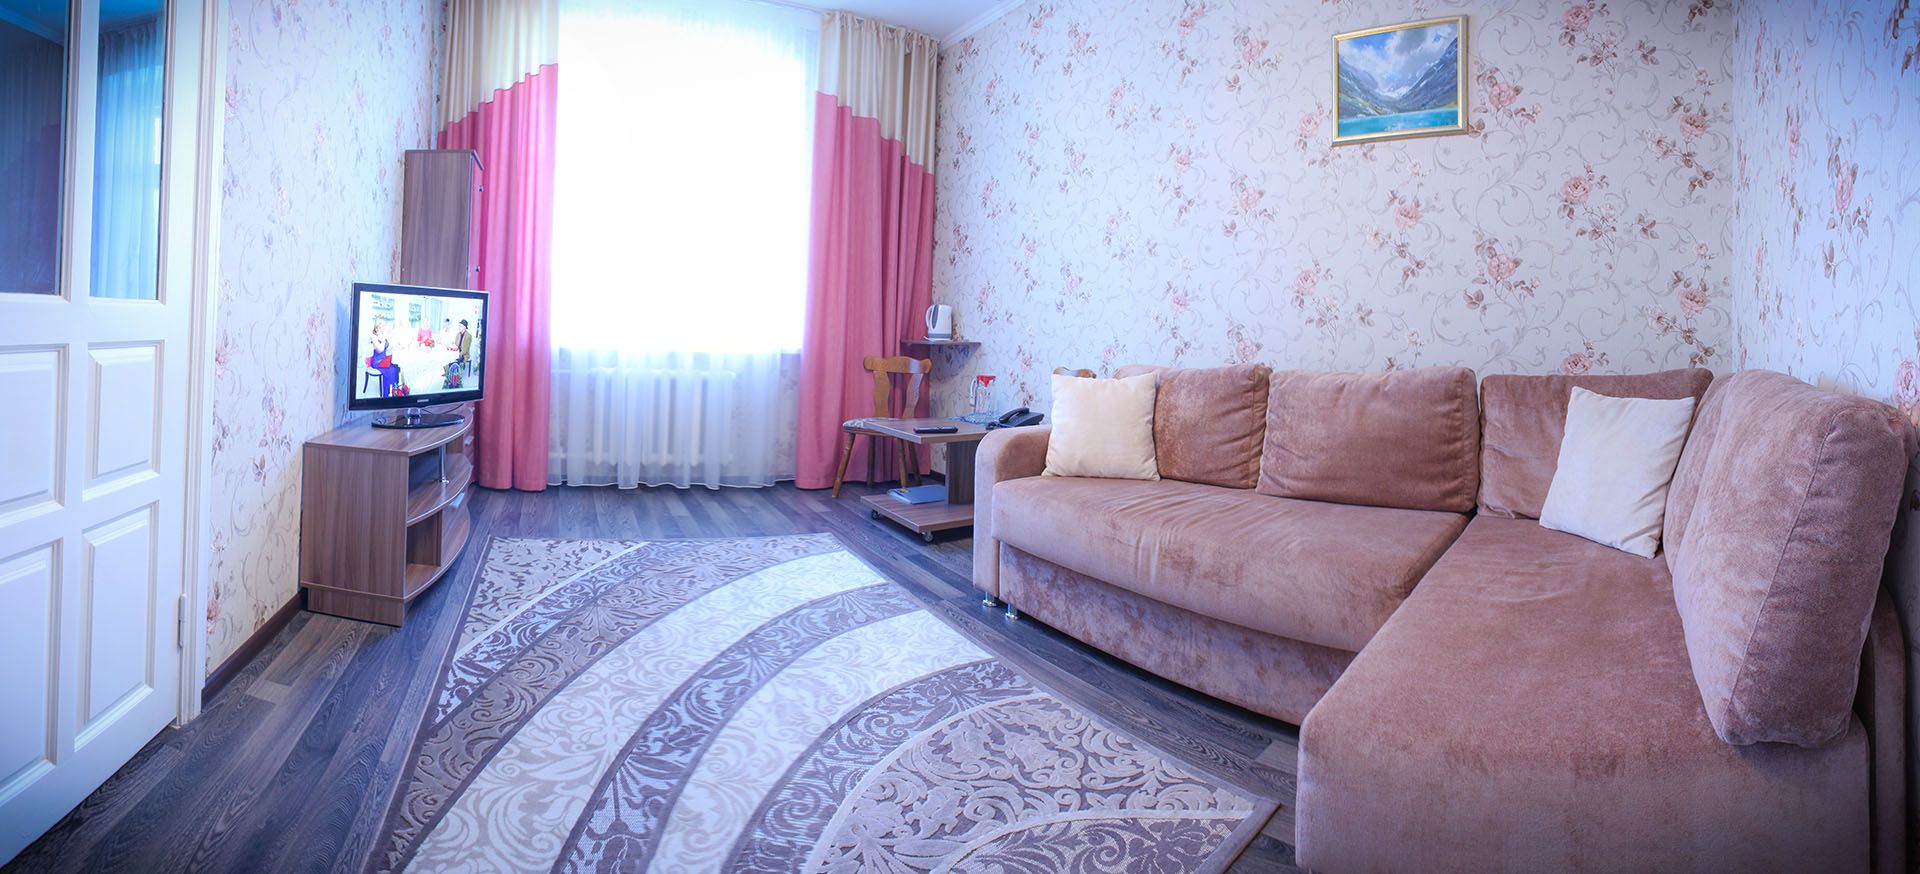 Фотография номера «Люкс 1-местный 2-комнатный» Санаторий "Барнаульский"